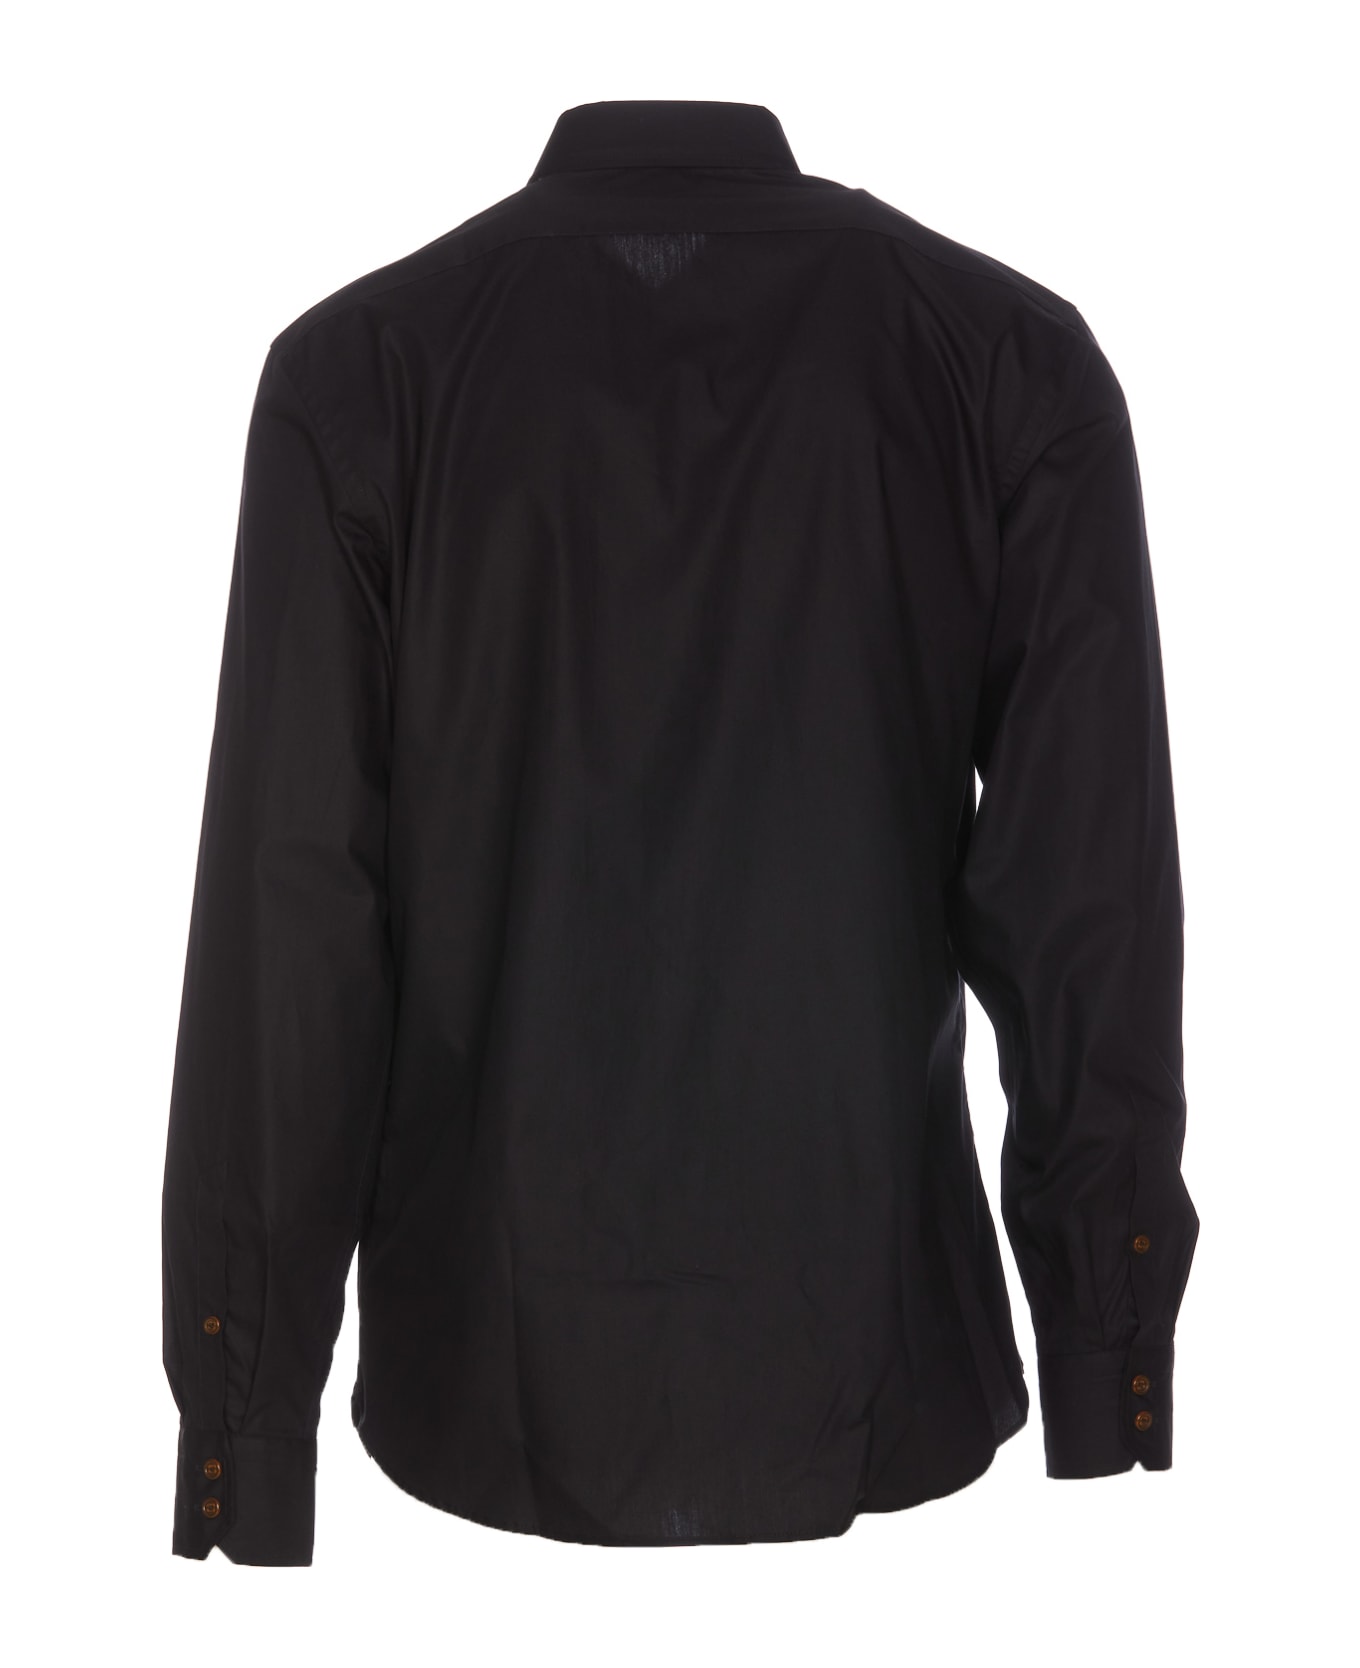 Vivienne Westwood Ghost Shirt - Black シャツ